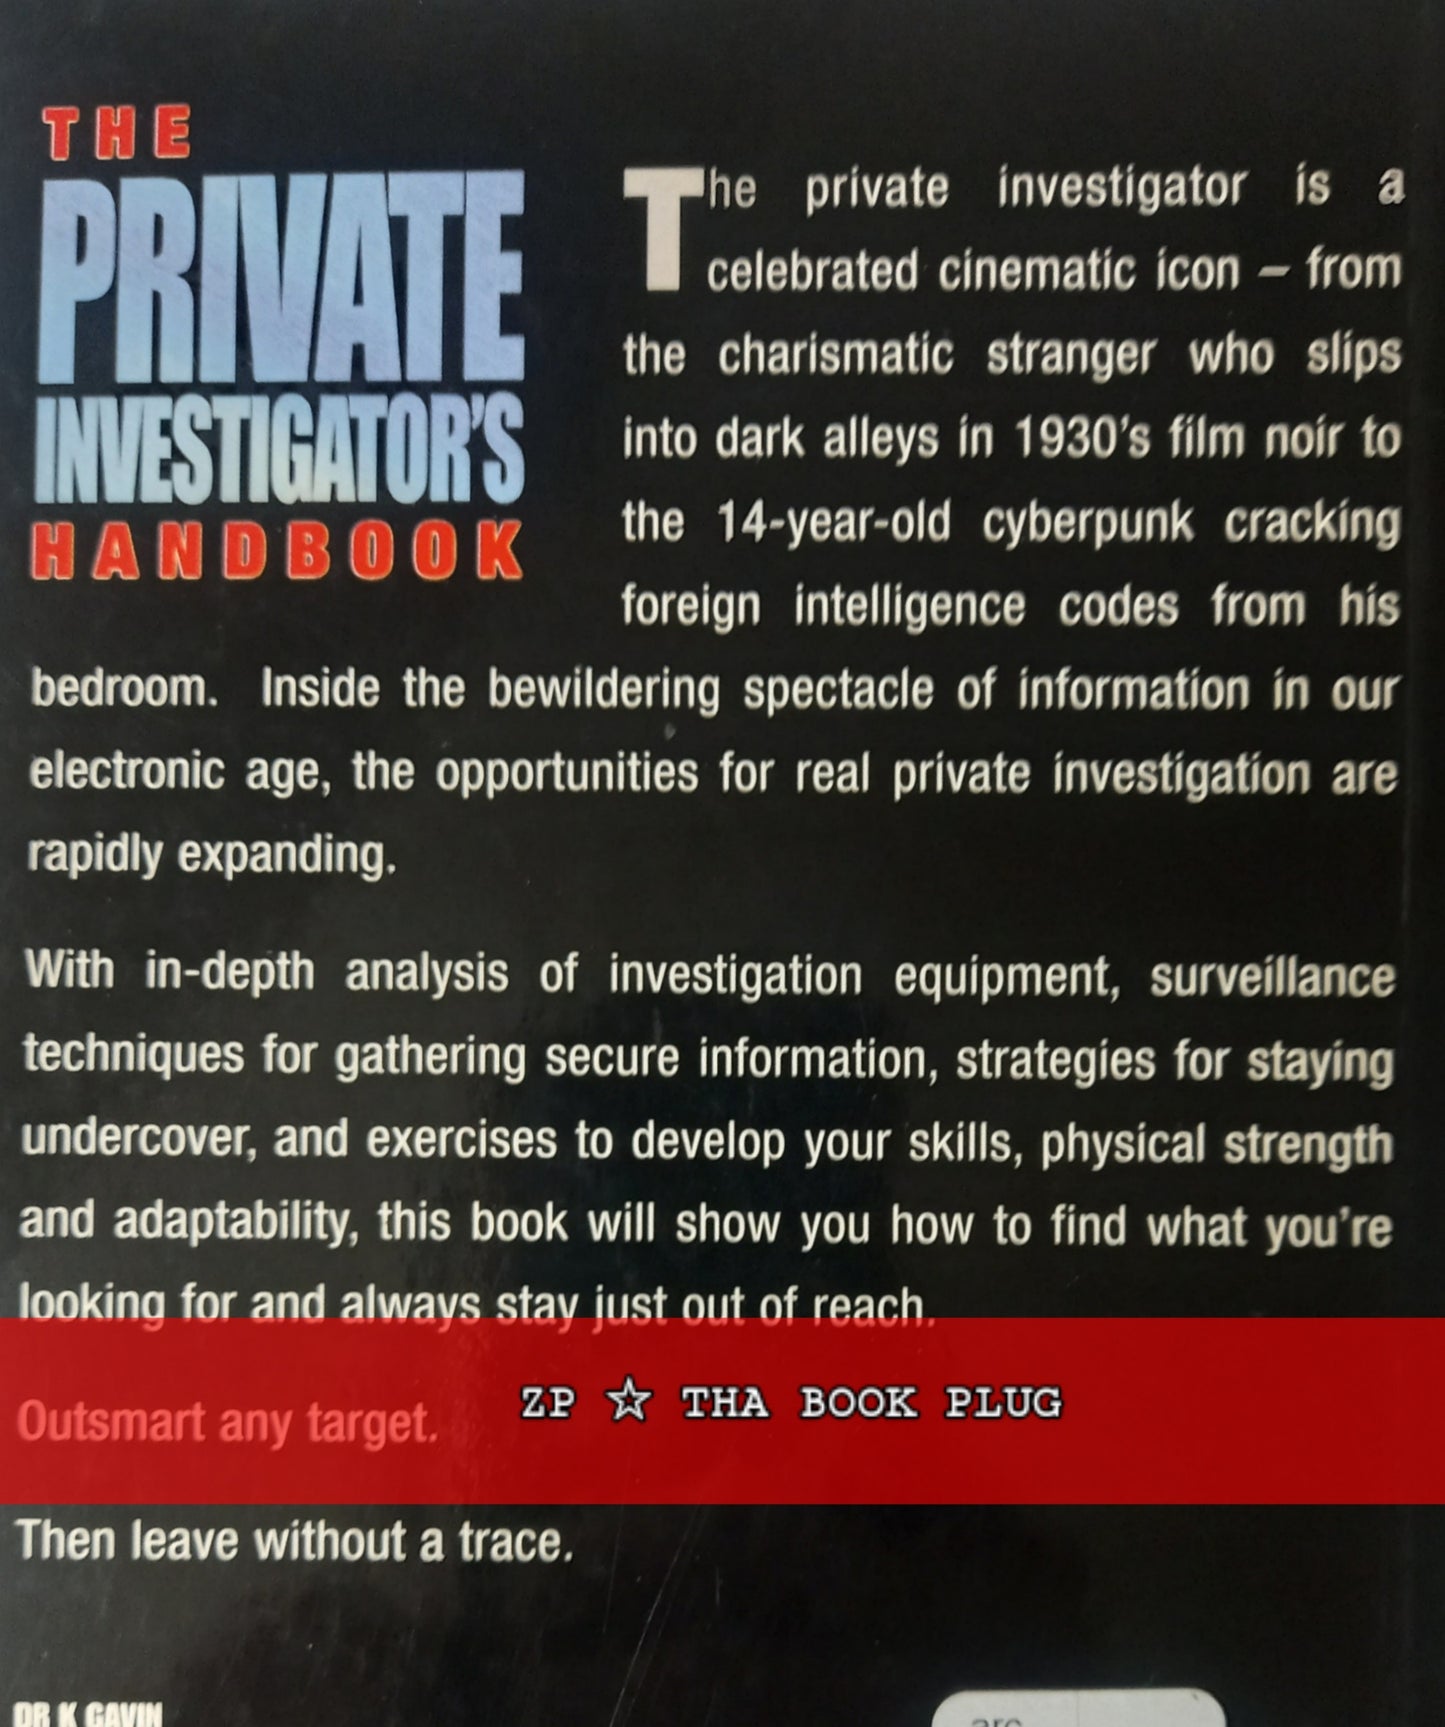 The Private Investigator's Handbook